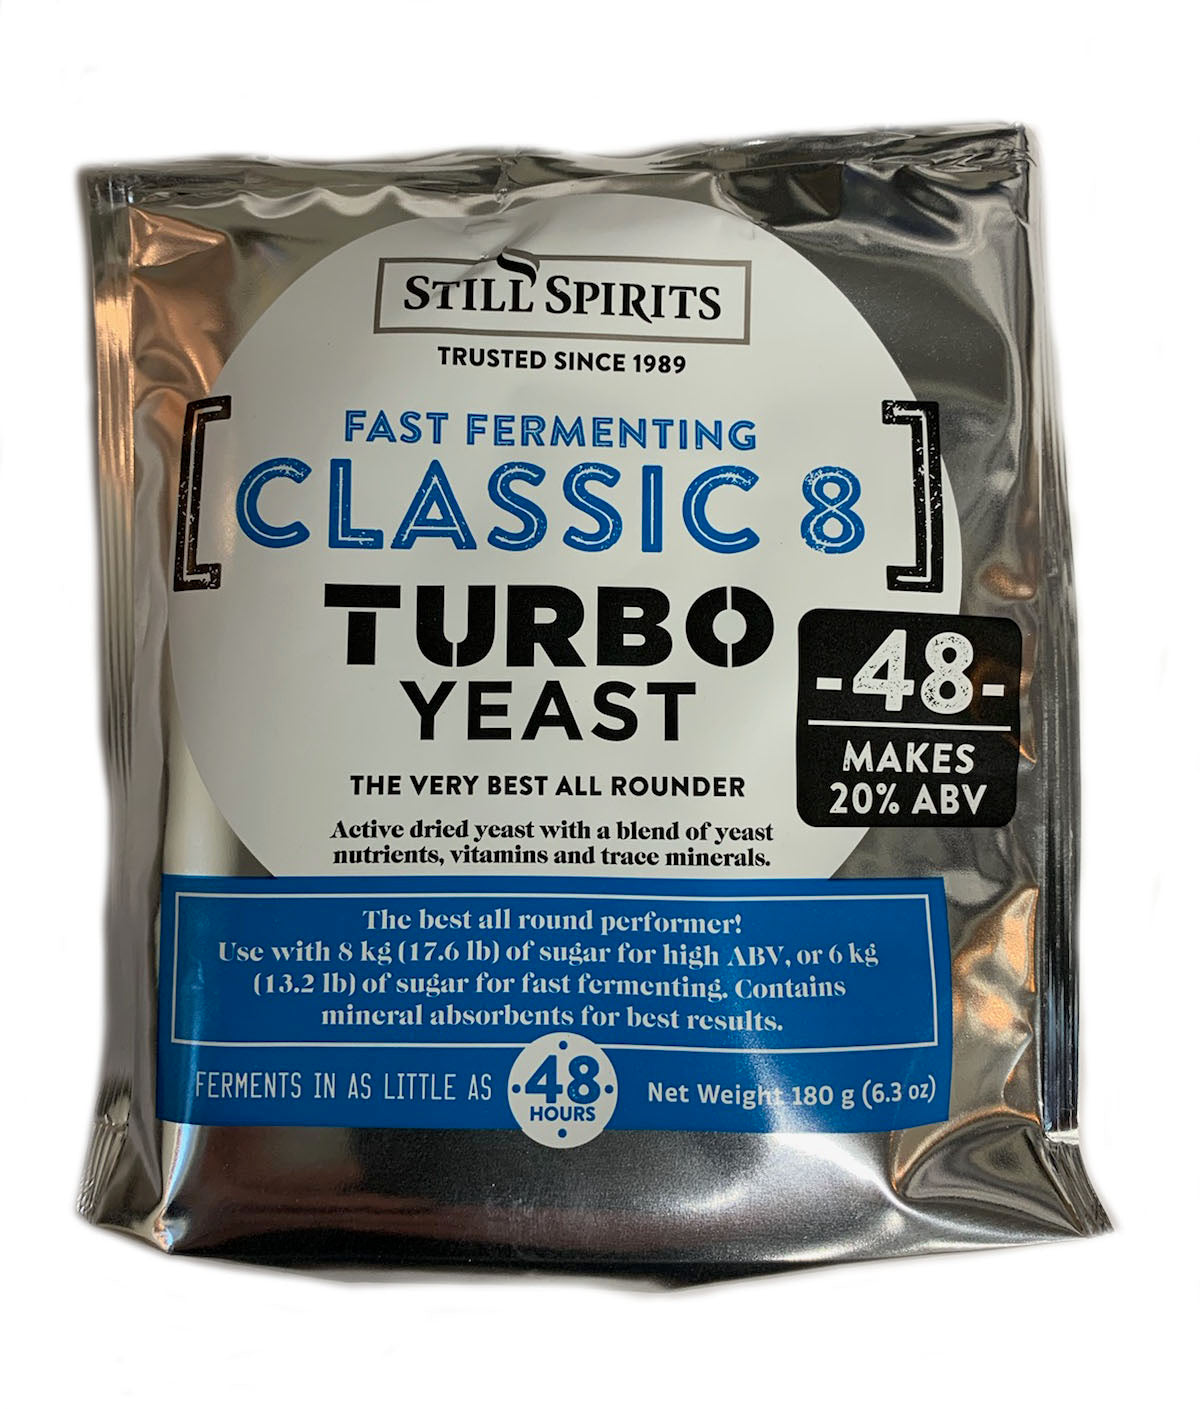 Still Spirits Turbo Yeast Classic 8 (48 hour)